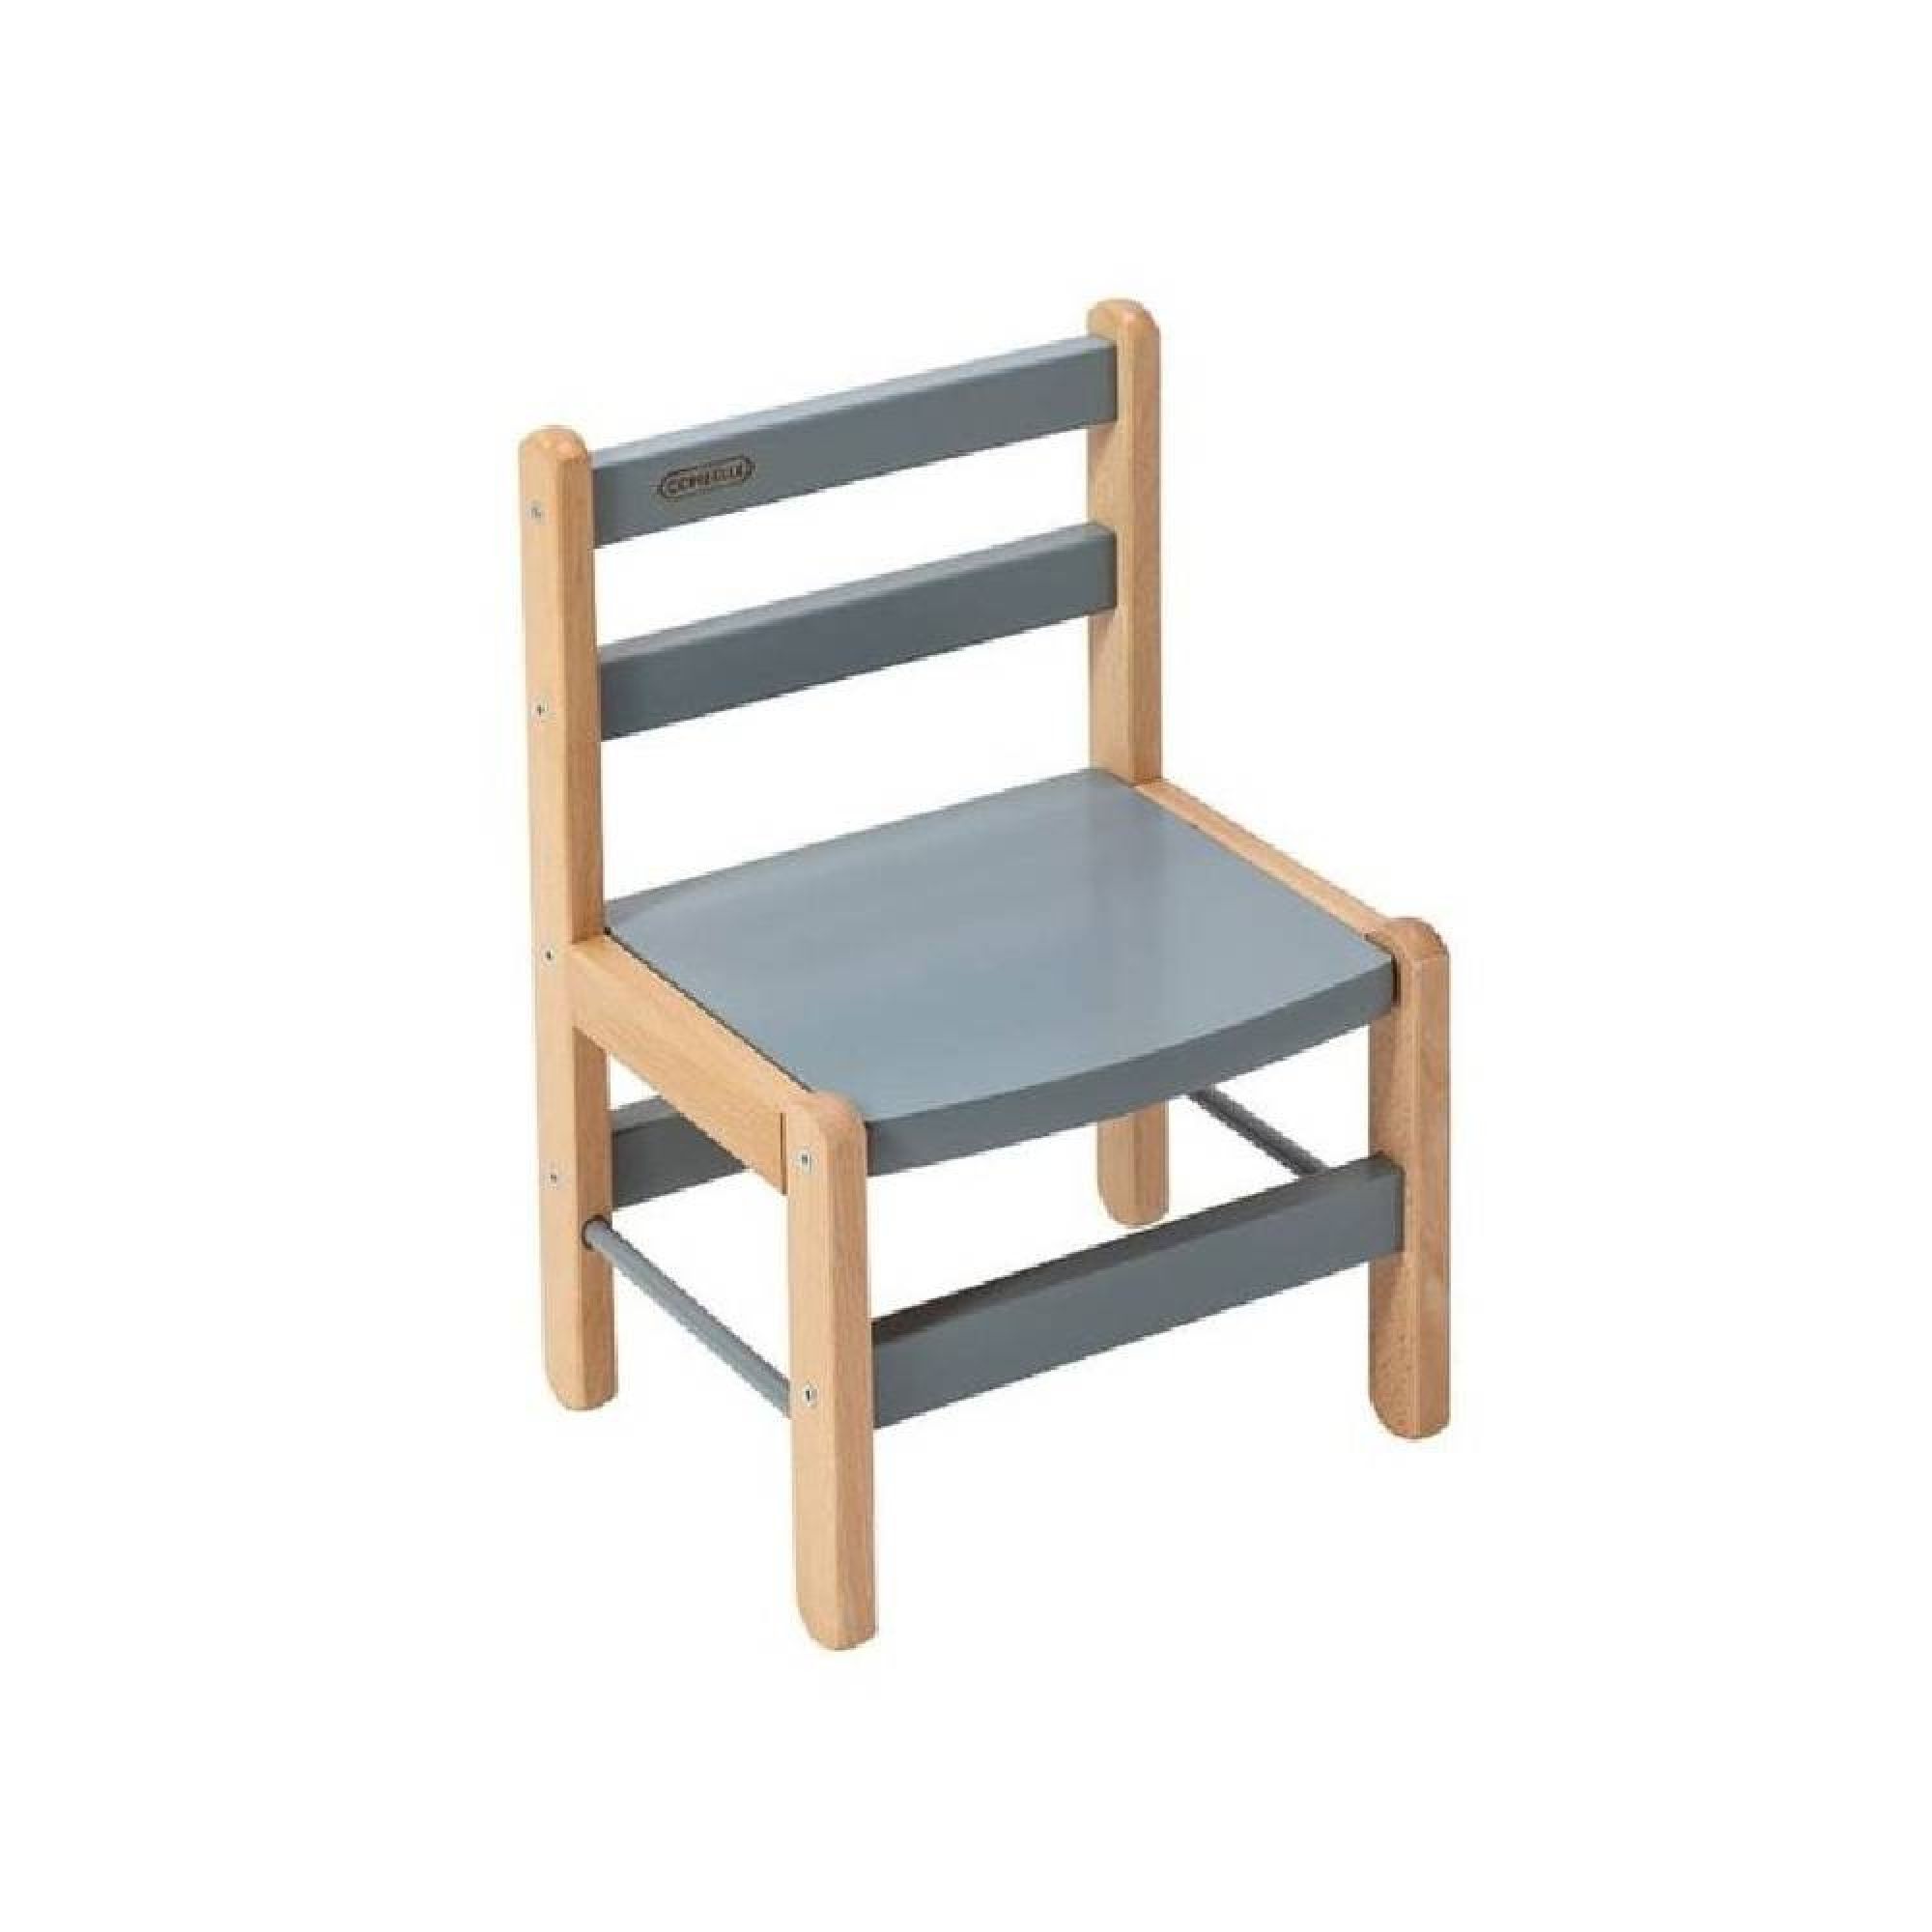 Petite chaise basse enfant Louise Hybride bleu gris - Made in Bébé